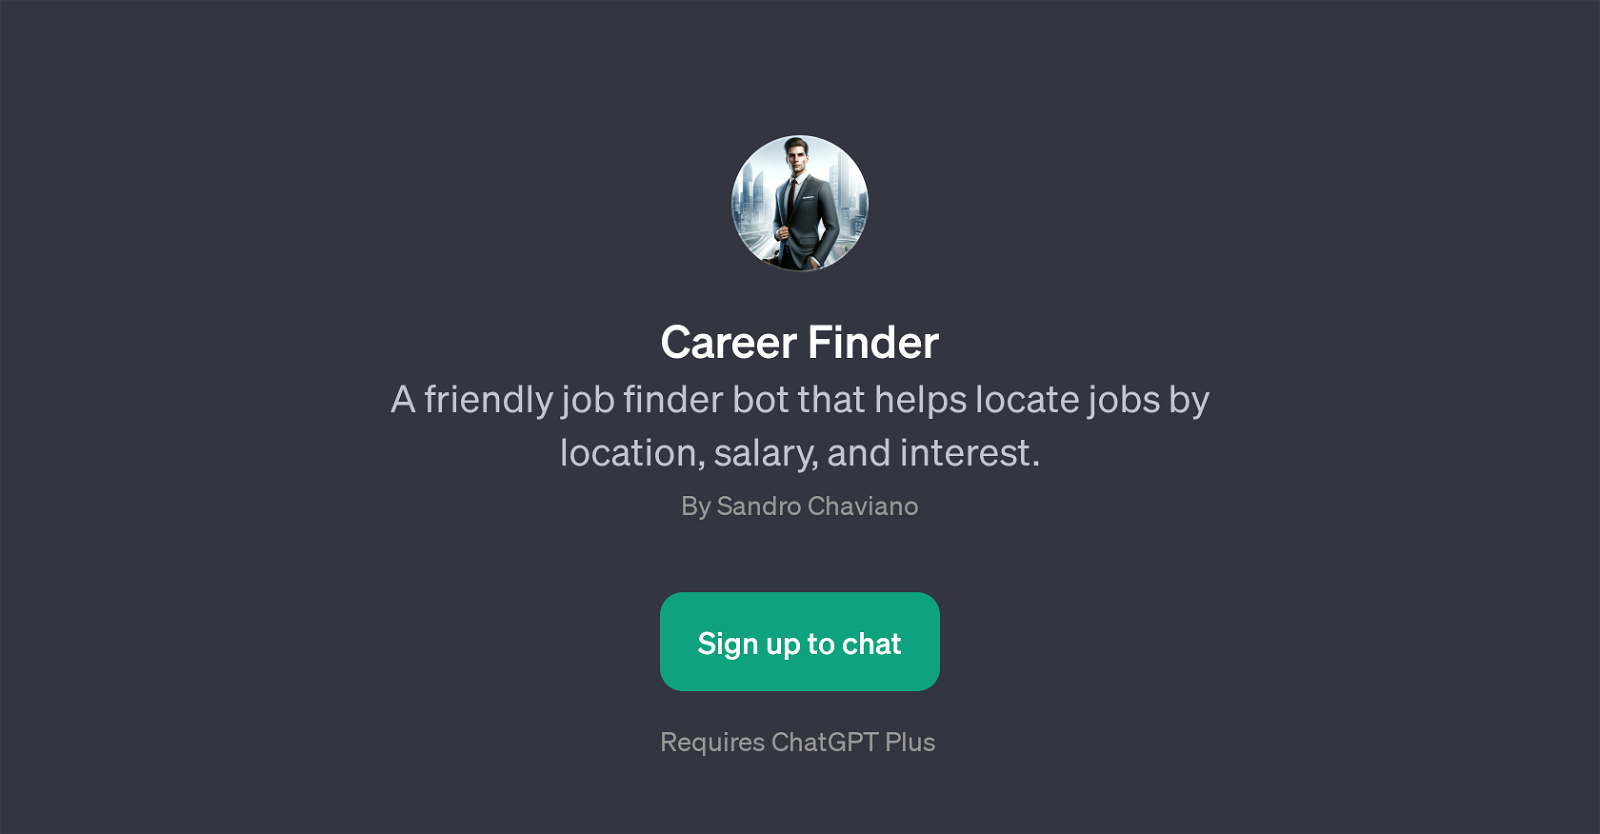 Career Finder website